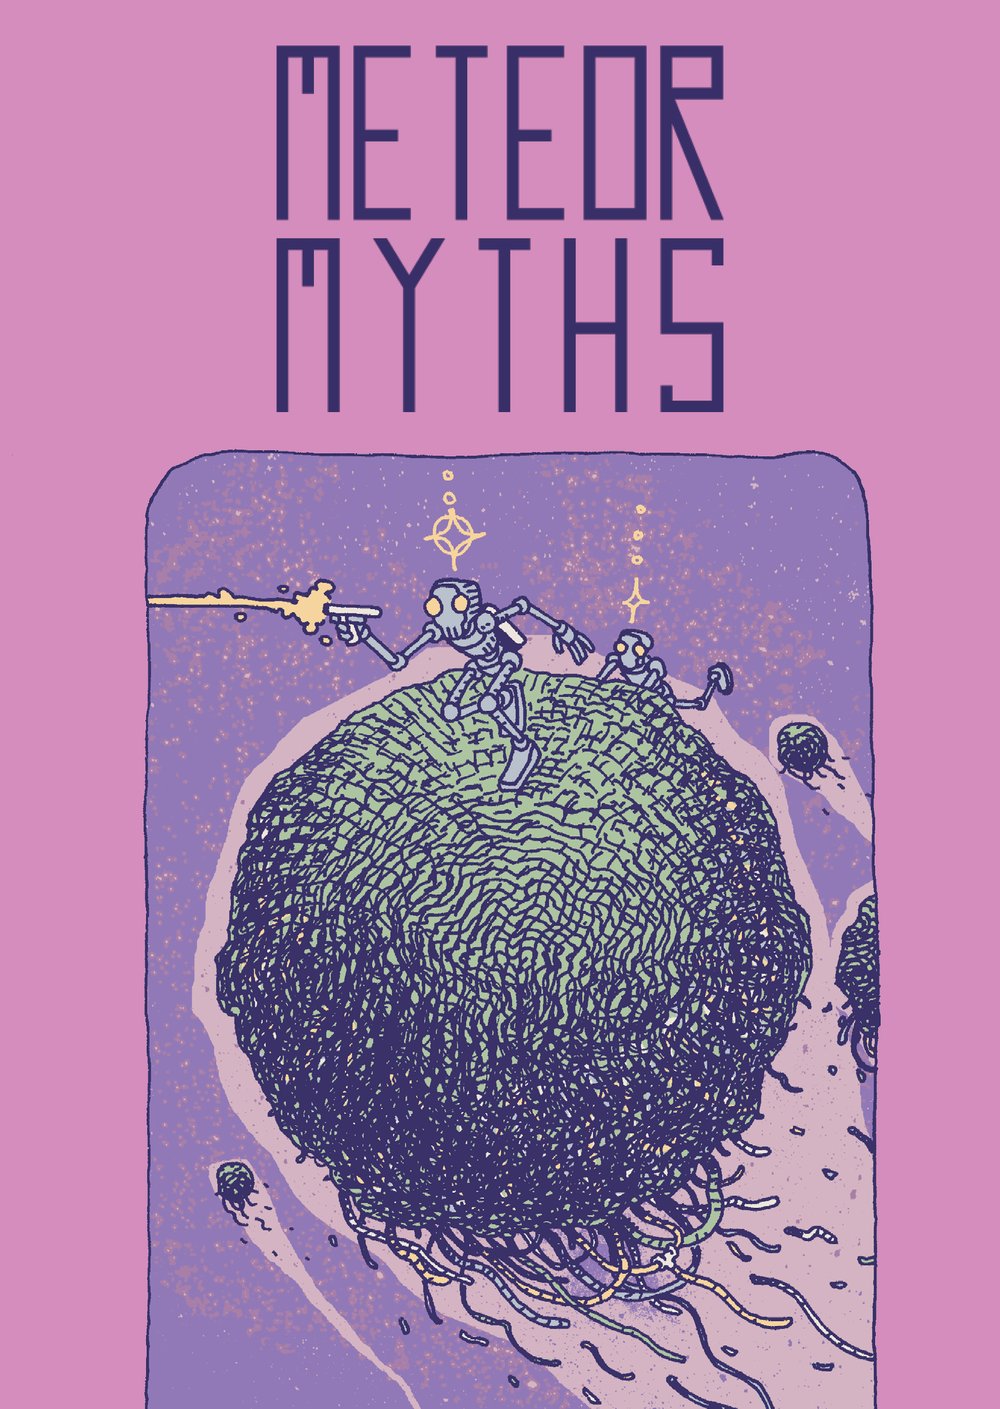 METEOR MYTHS #1